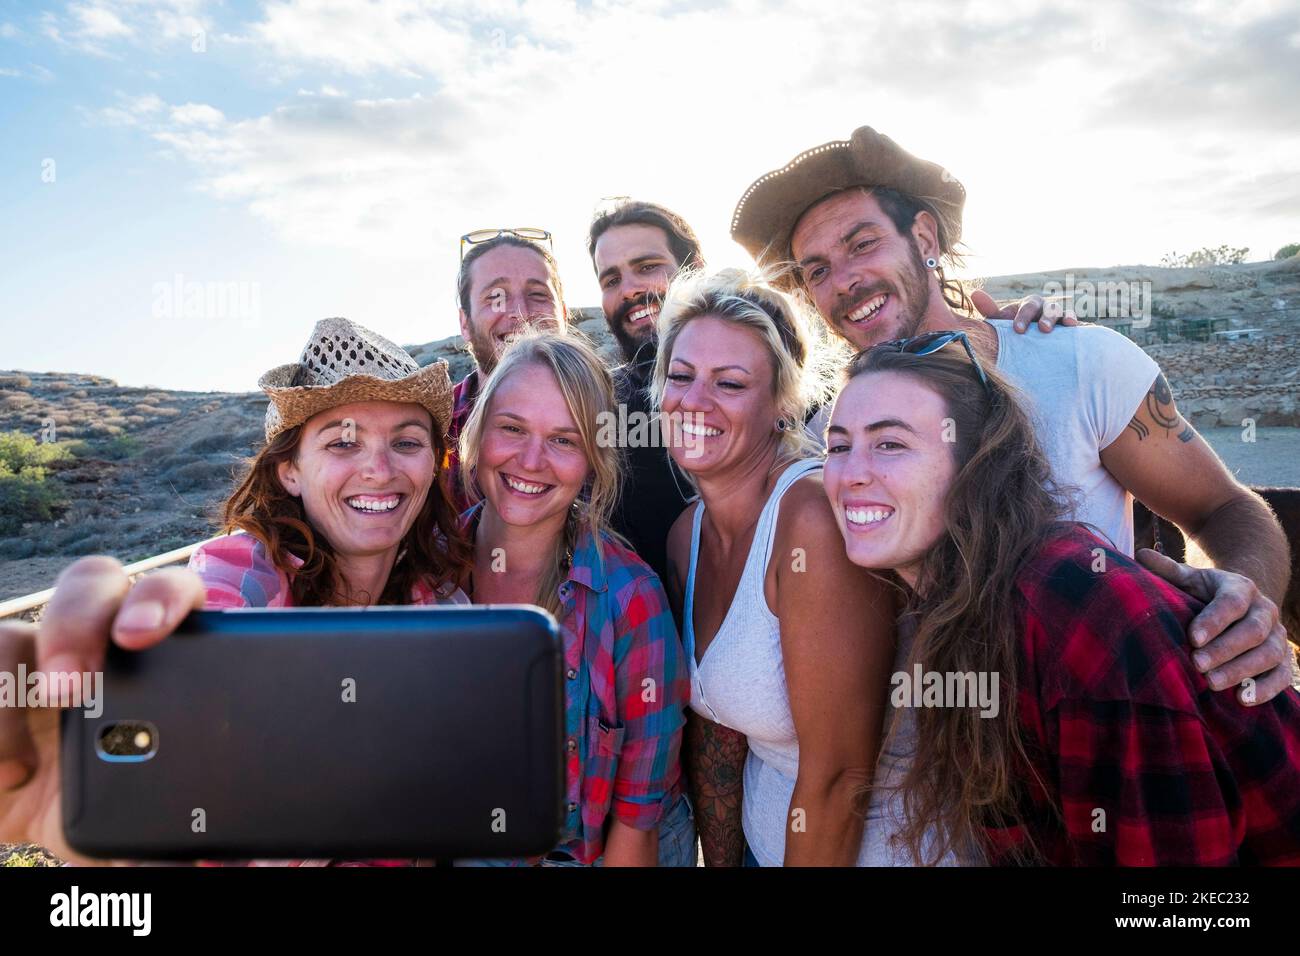 groupe de sept personnes s'amusant ensemble prenant un selfie souriant, riant et regardant la caméra - amitié concept et style de vie Banque D'Images